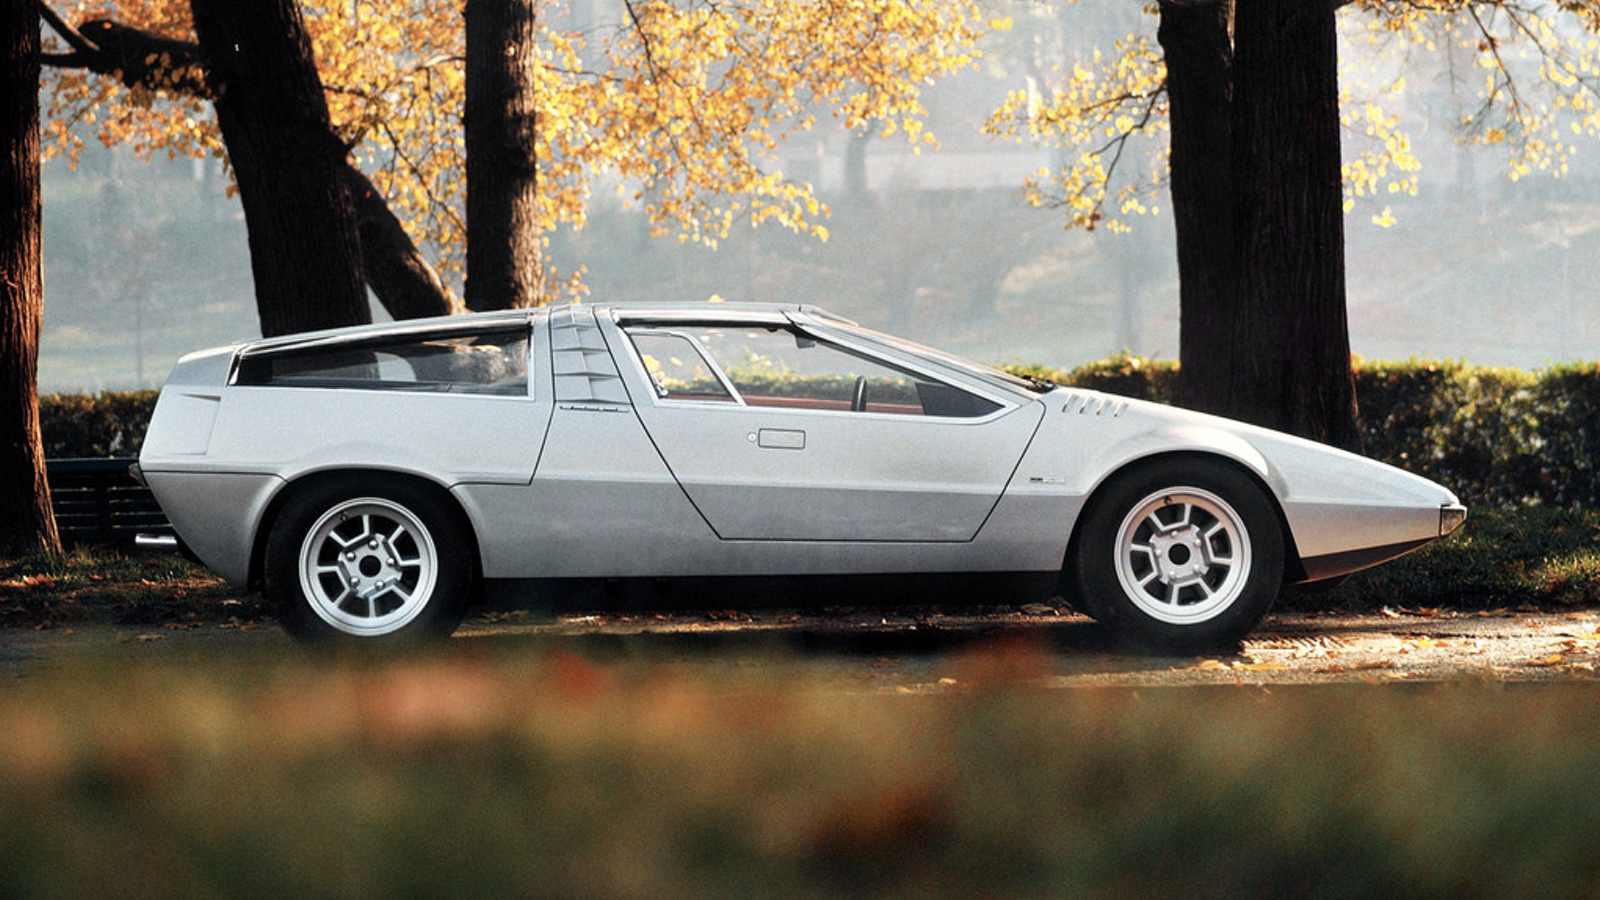 Bellissima: Giorgetto Giugiaro’s greatest car designs | Classic & Sports Car